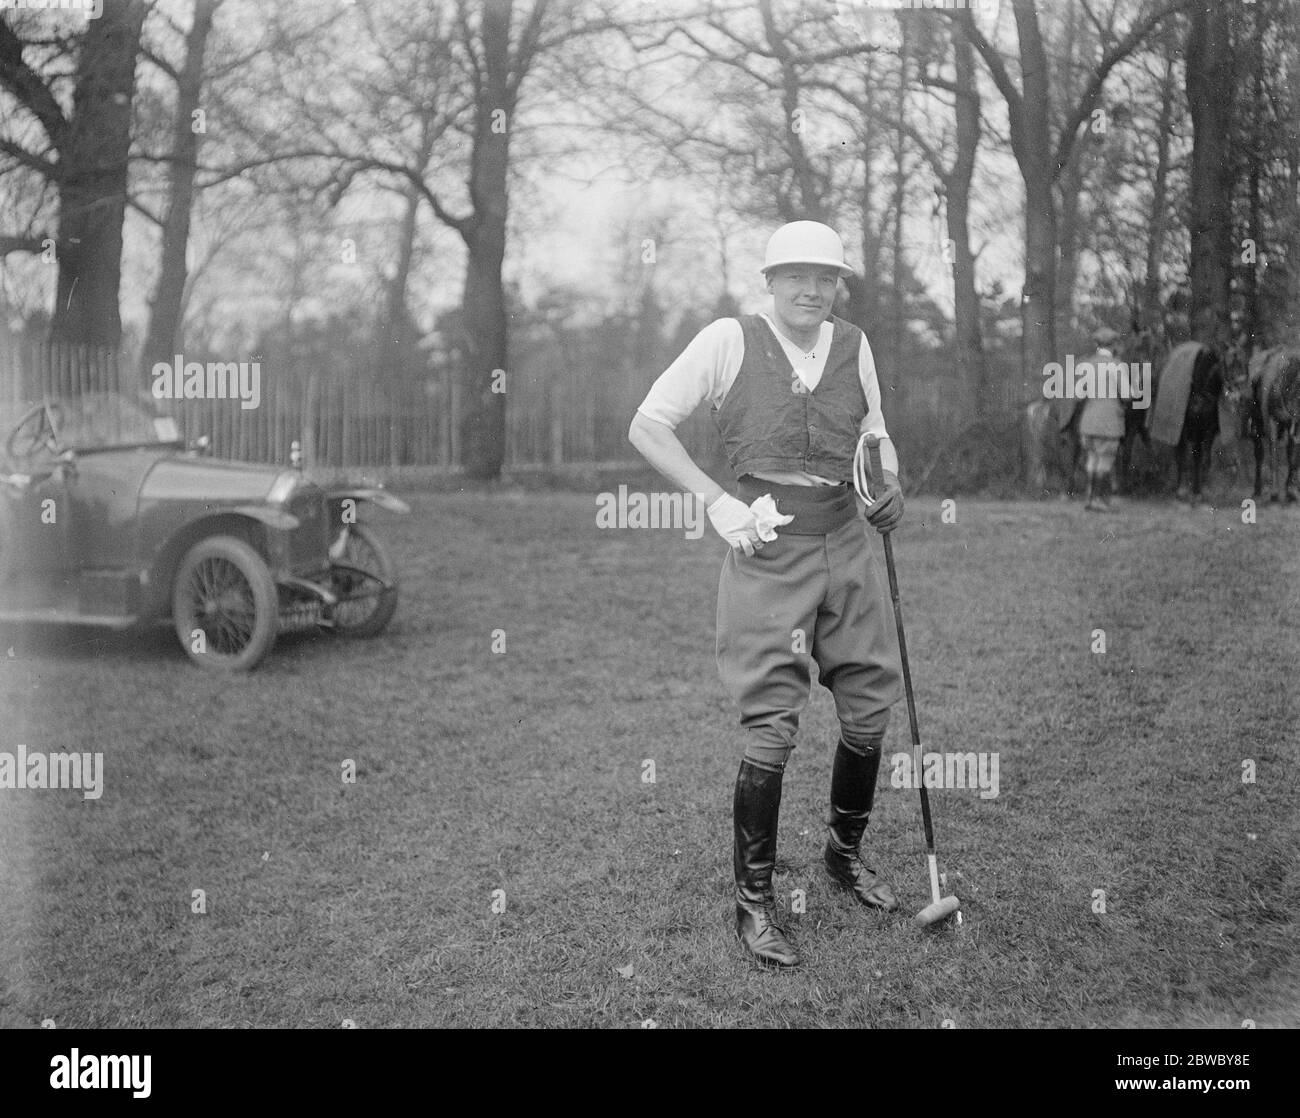 Polo Saison beginnt mit Hurlingham Frühjahr Handicap Turnier im Worcester Park, Malden. Herr S Sanford , der für Eastcott spielte. 20. April 1925 Stockfoto